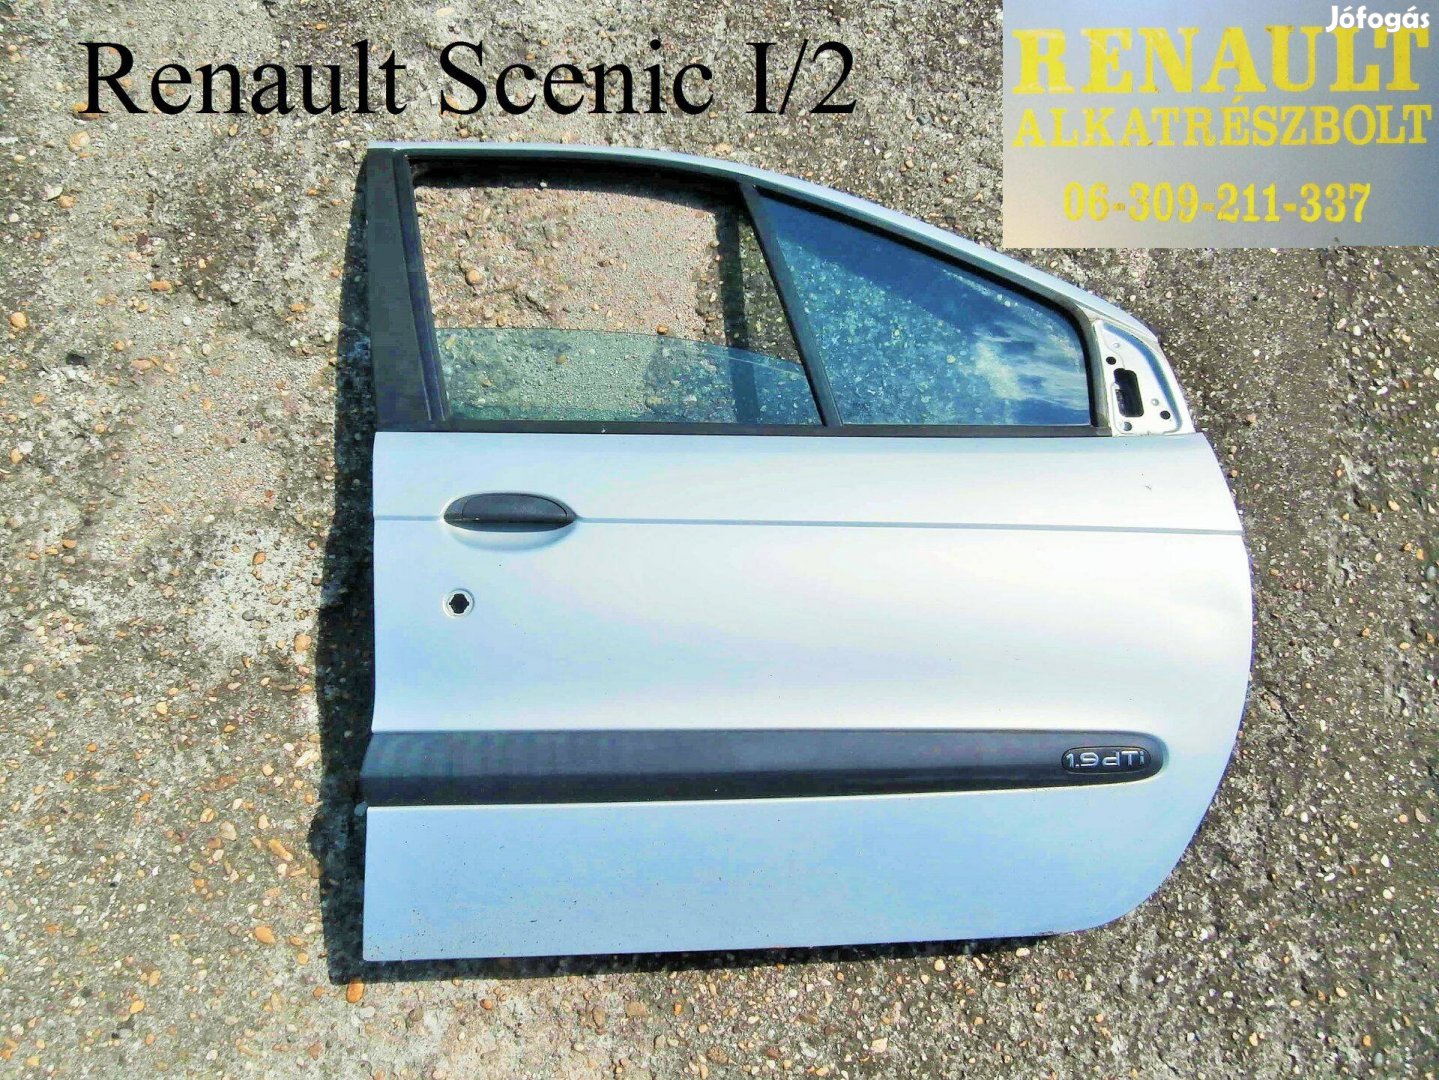 Renault Scenic I.2 jobb első ajtó